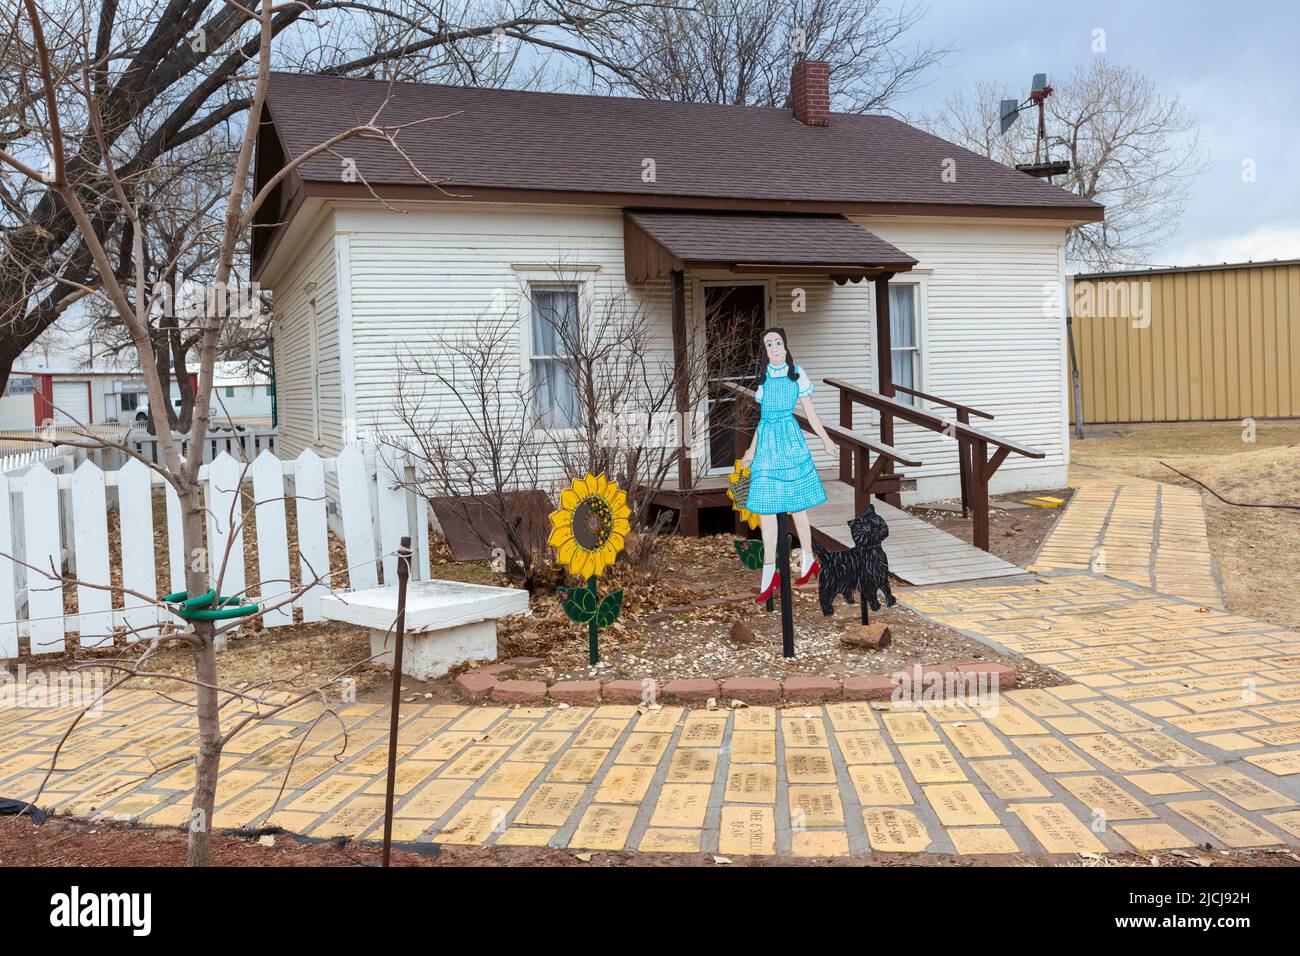 Liberal, Kansas - Casa di Dorothy e la Terra di Oz, un'attrazione turistica modellata sul film del 1939, il mago di Oz. Foto Stock